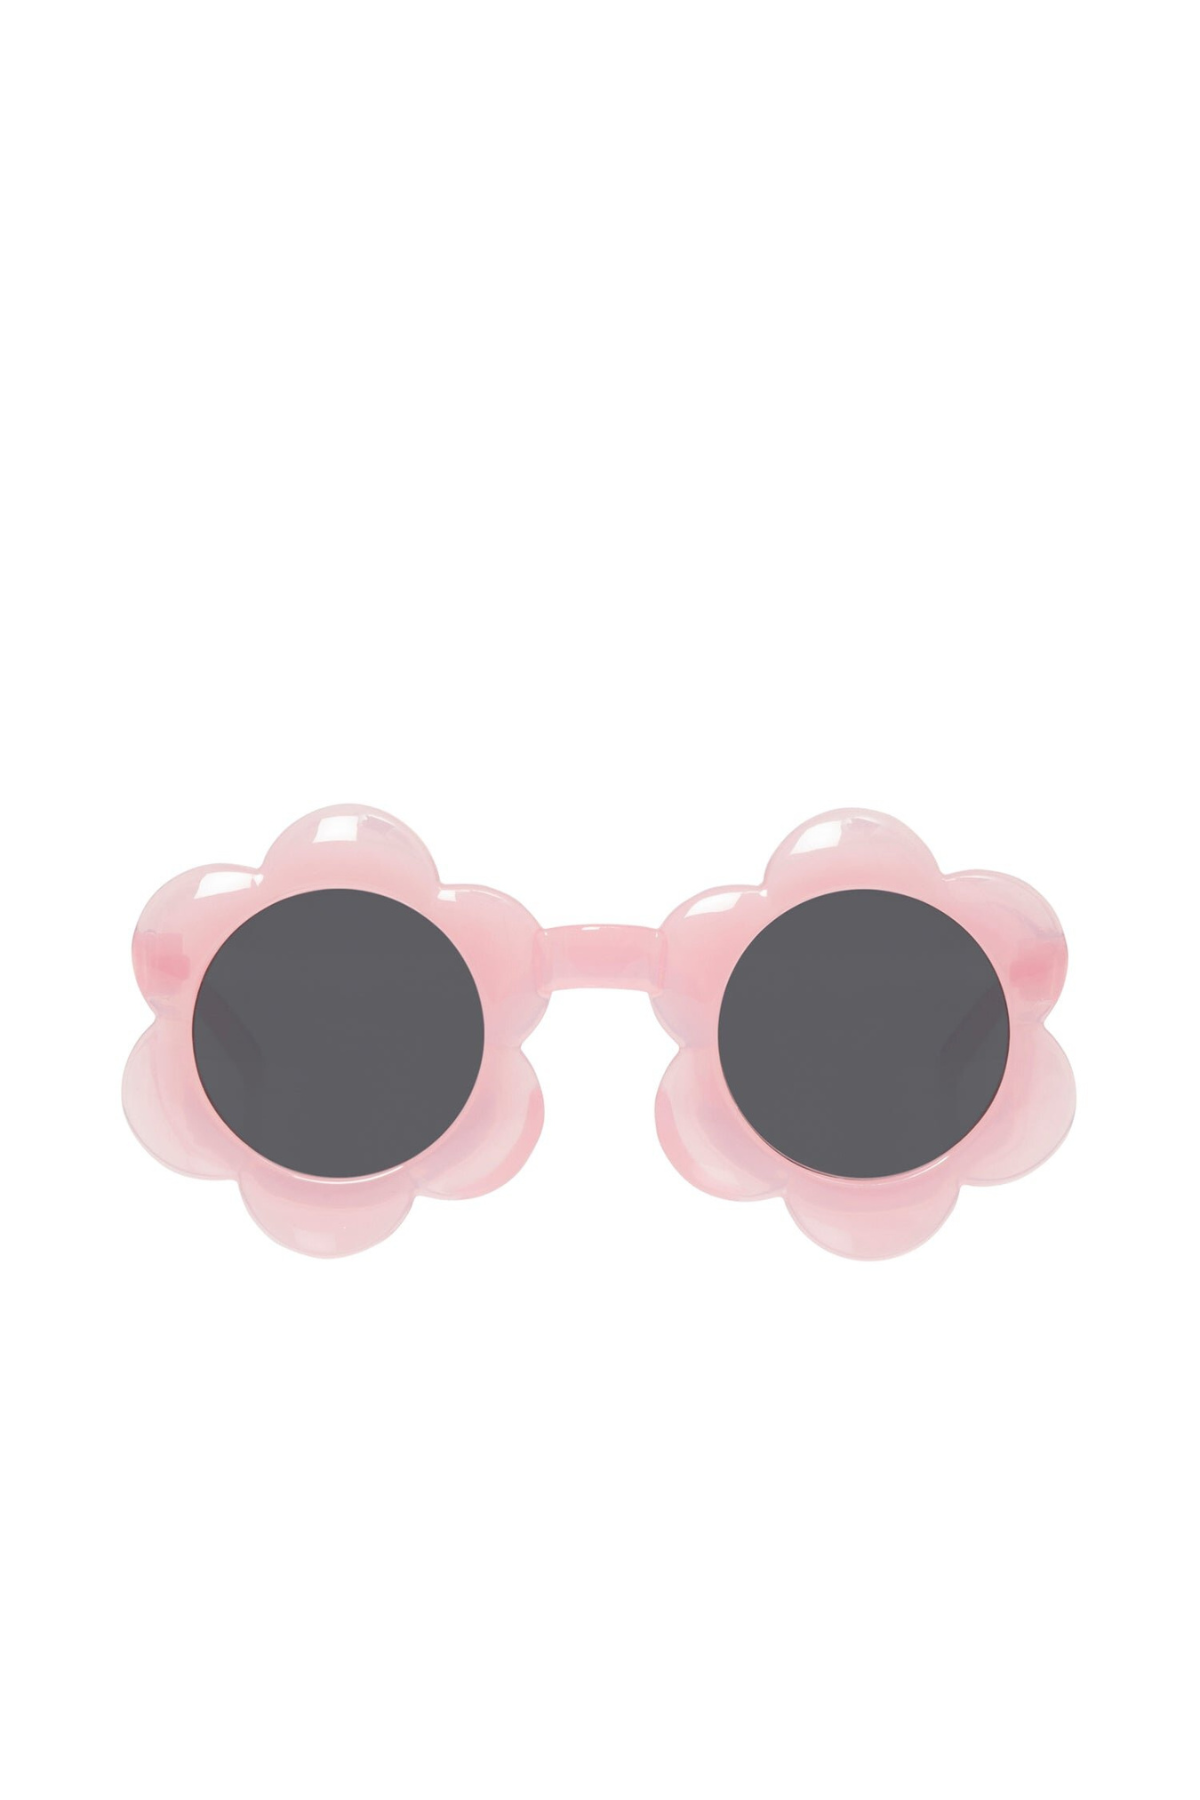 Kindersonnenbrille "Spotted Flower"